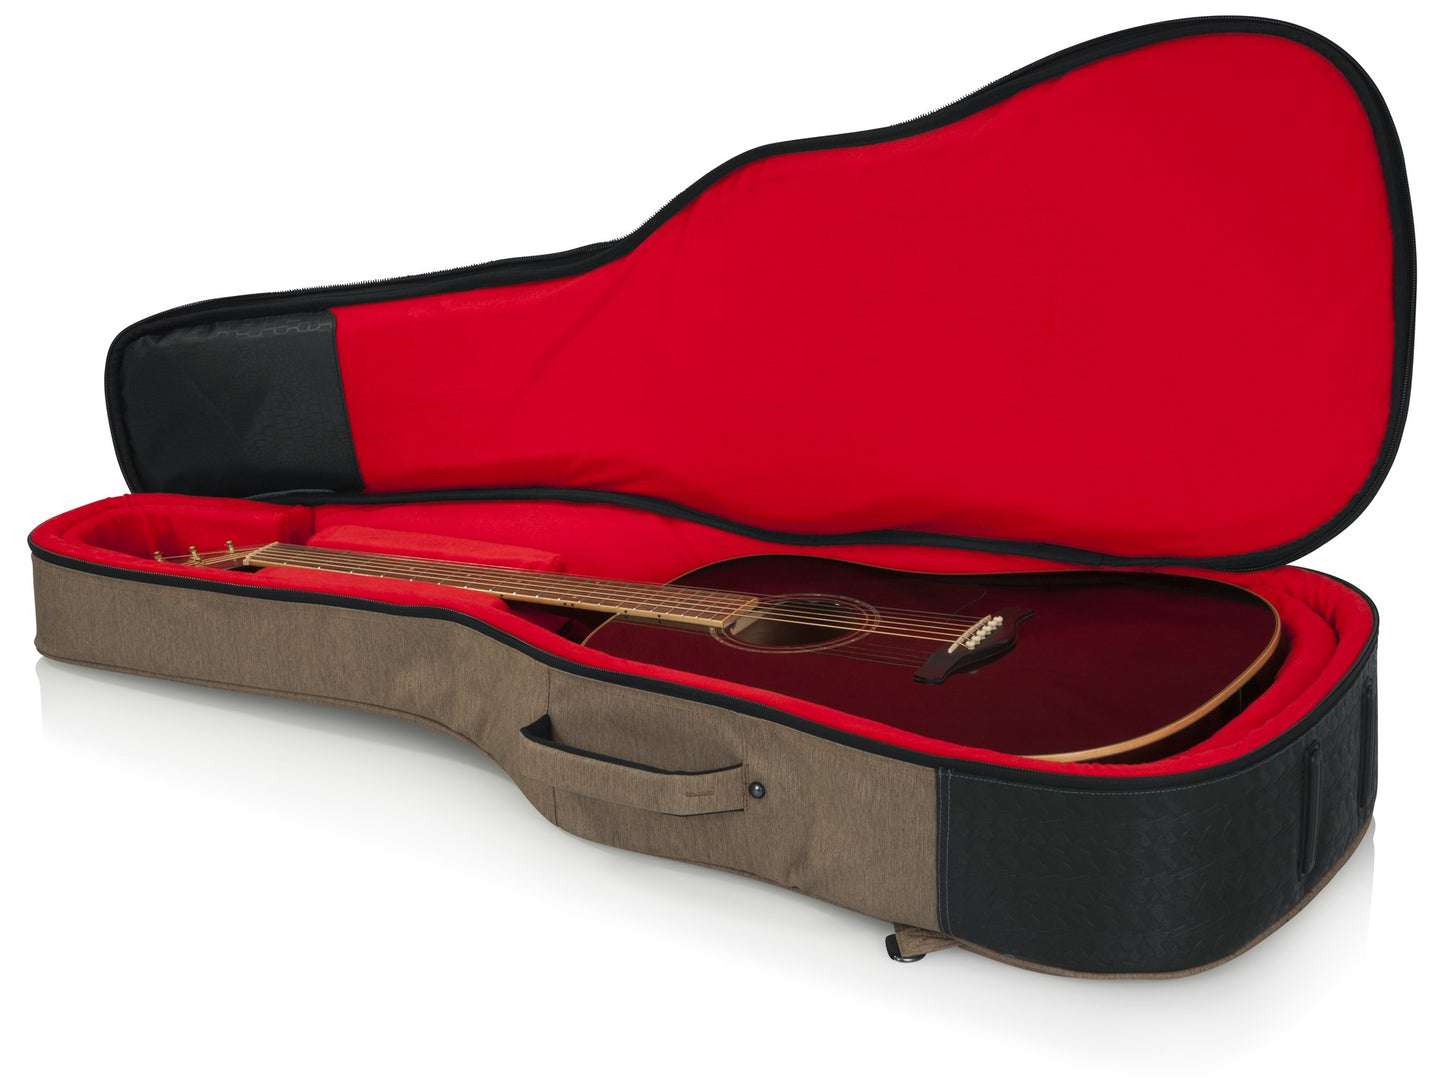 Gator GT-ACOUSTIC-TAN Transit Series Acoustic Guitar Gig Bag - Tan